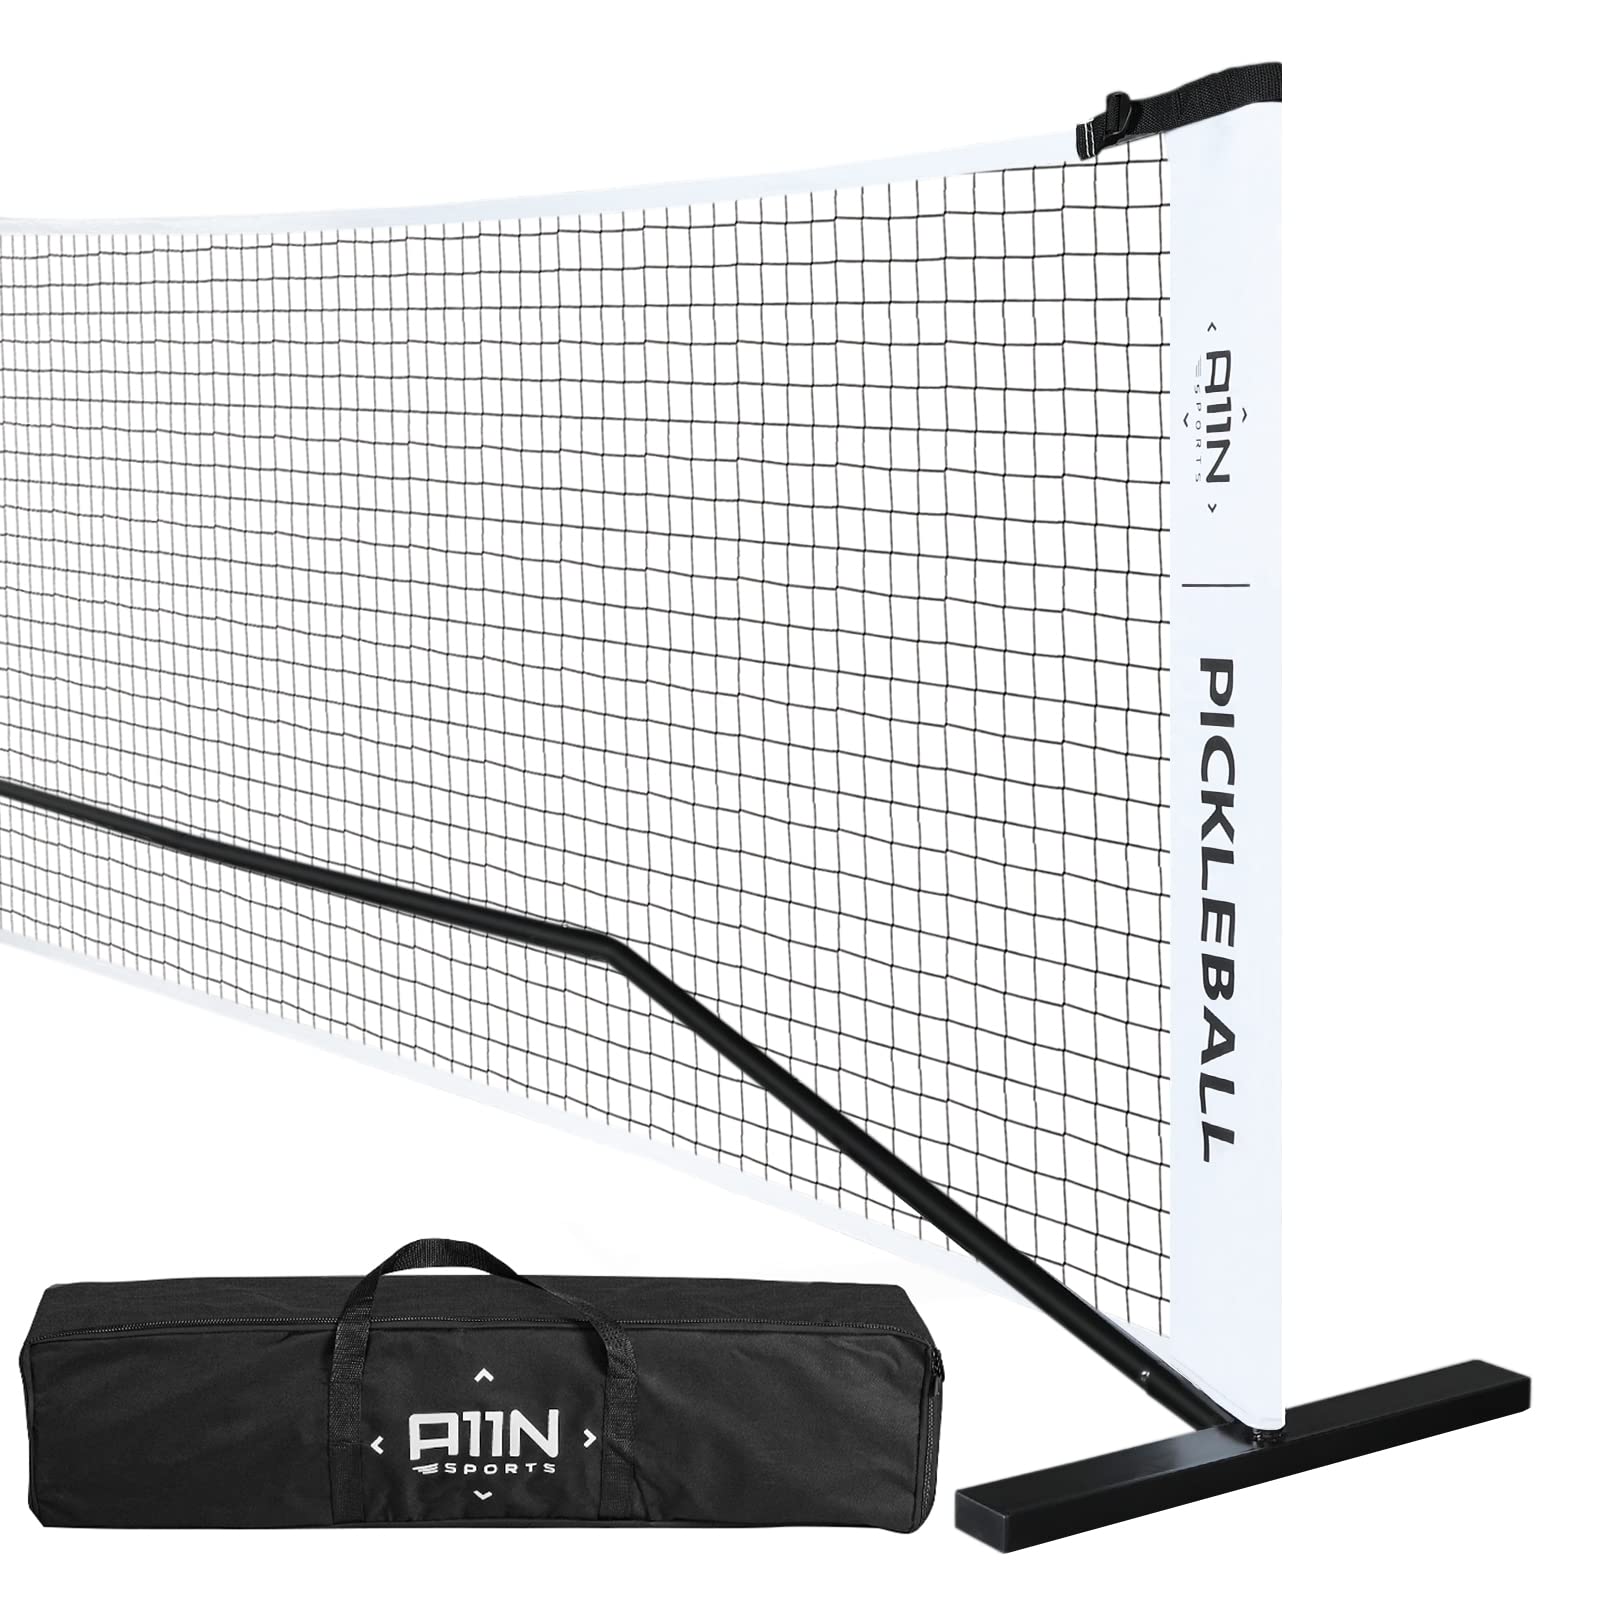 A11N SPORTS A11N 便携式匹克球网系统，专为所有天气条件而设计，配有稳定的金属框架和坚固的 PE 网，规定尺寸的网带手提袋